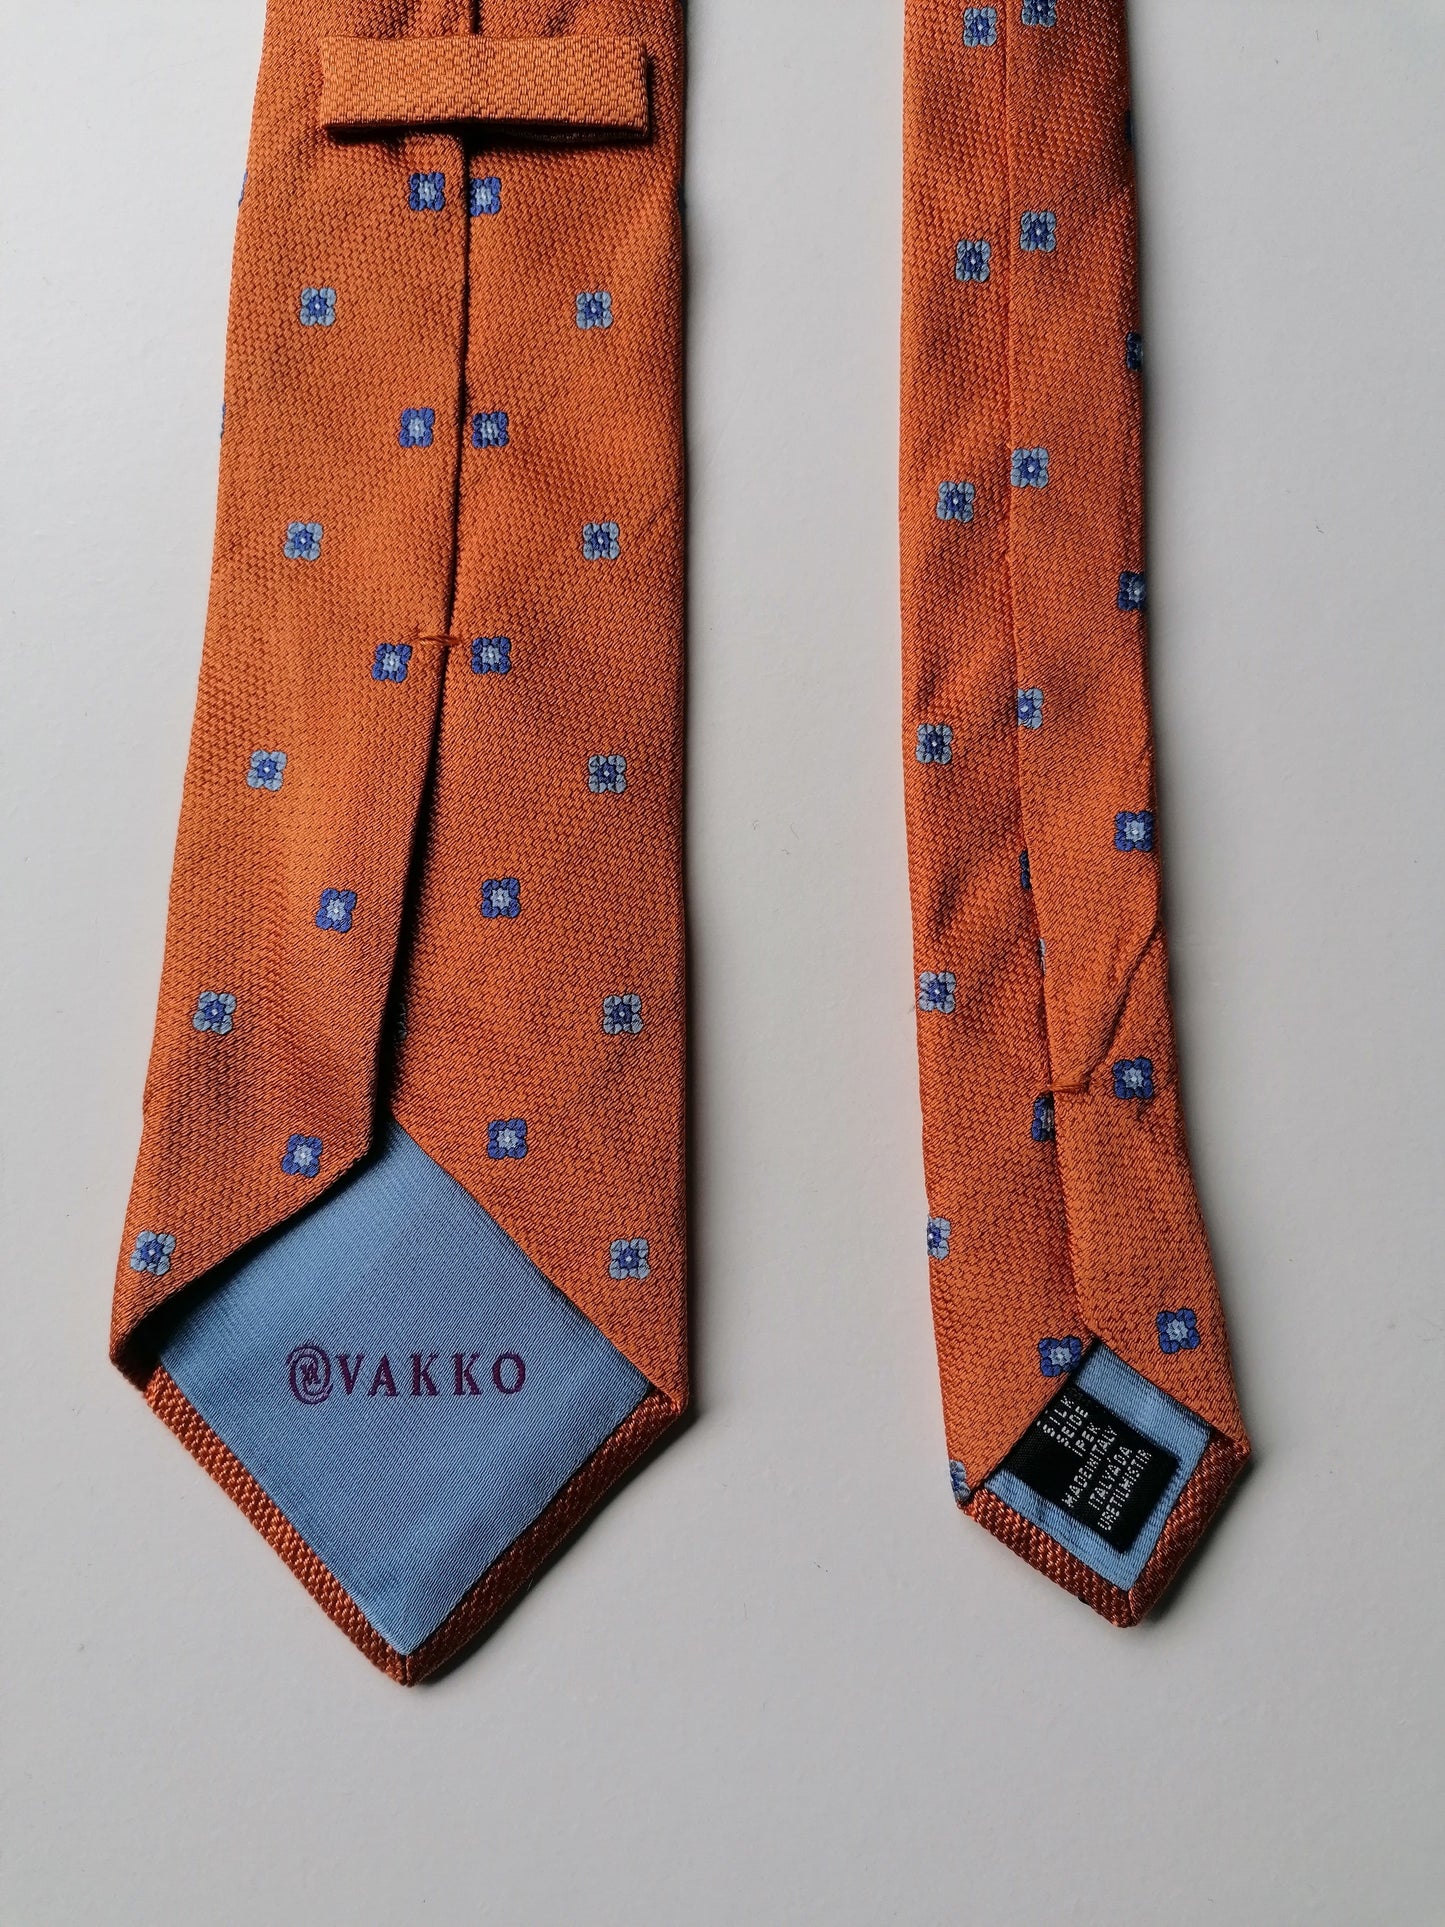 VAKKO Zijden stropdas. Oranje Blauw gekleurd.